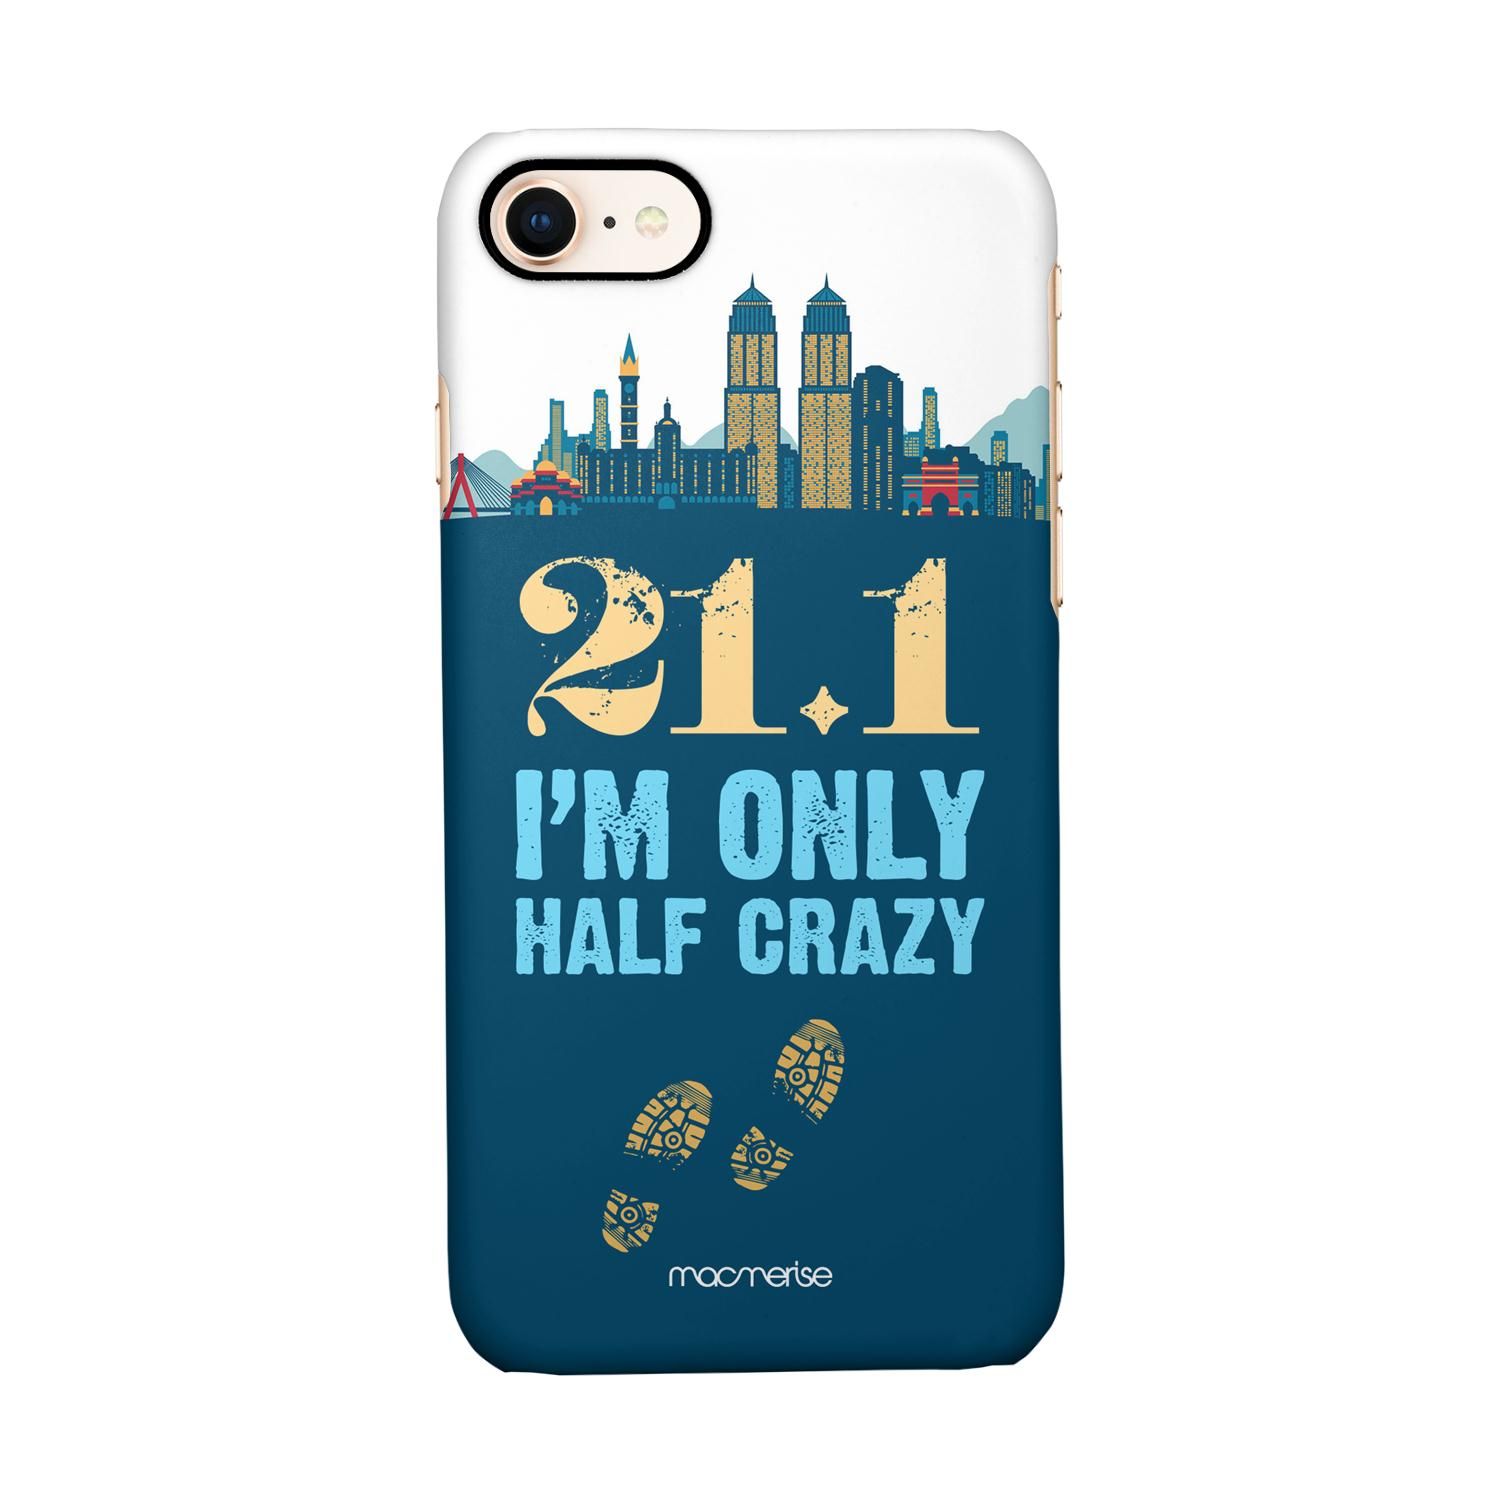 Buy Half Crazy - Sleek Phone Case for iPhone 7 Online